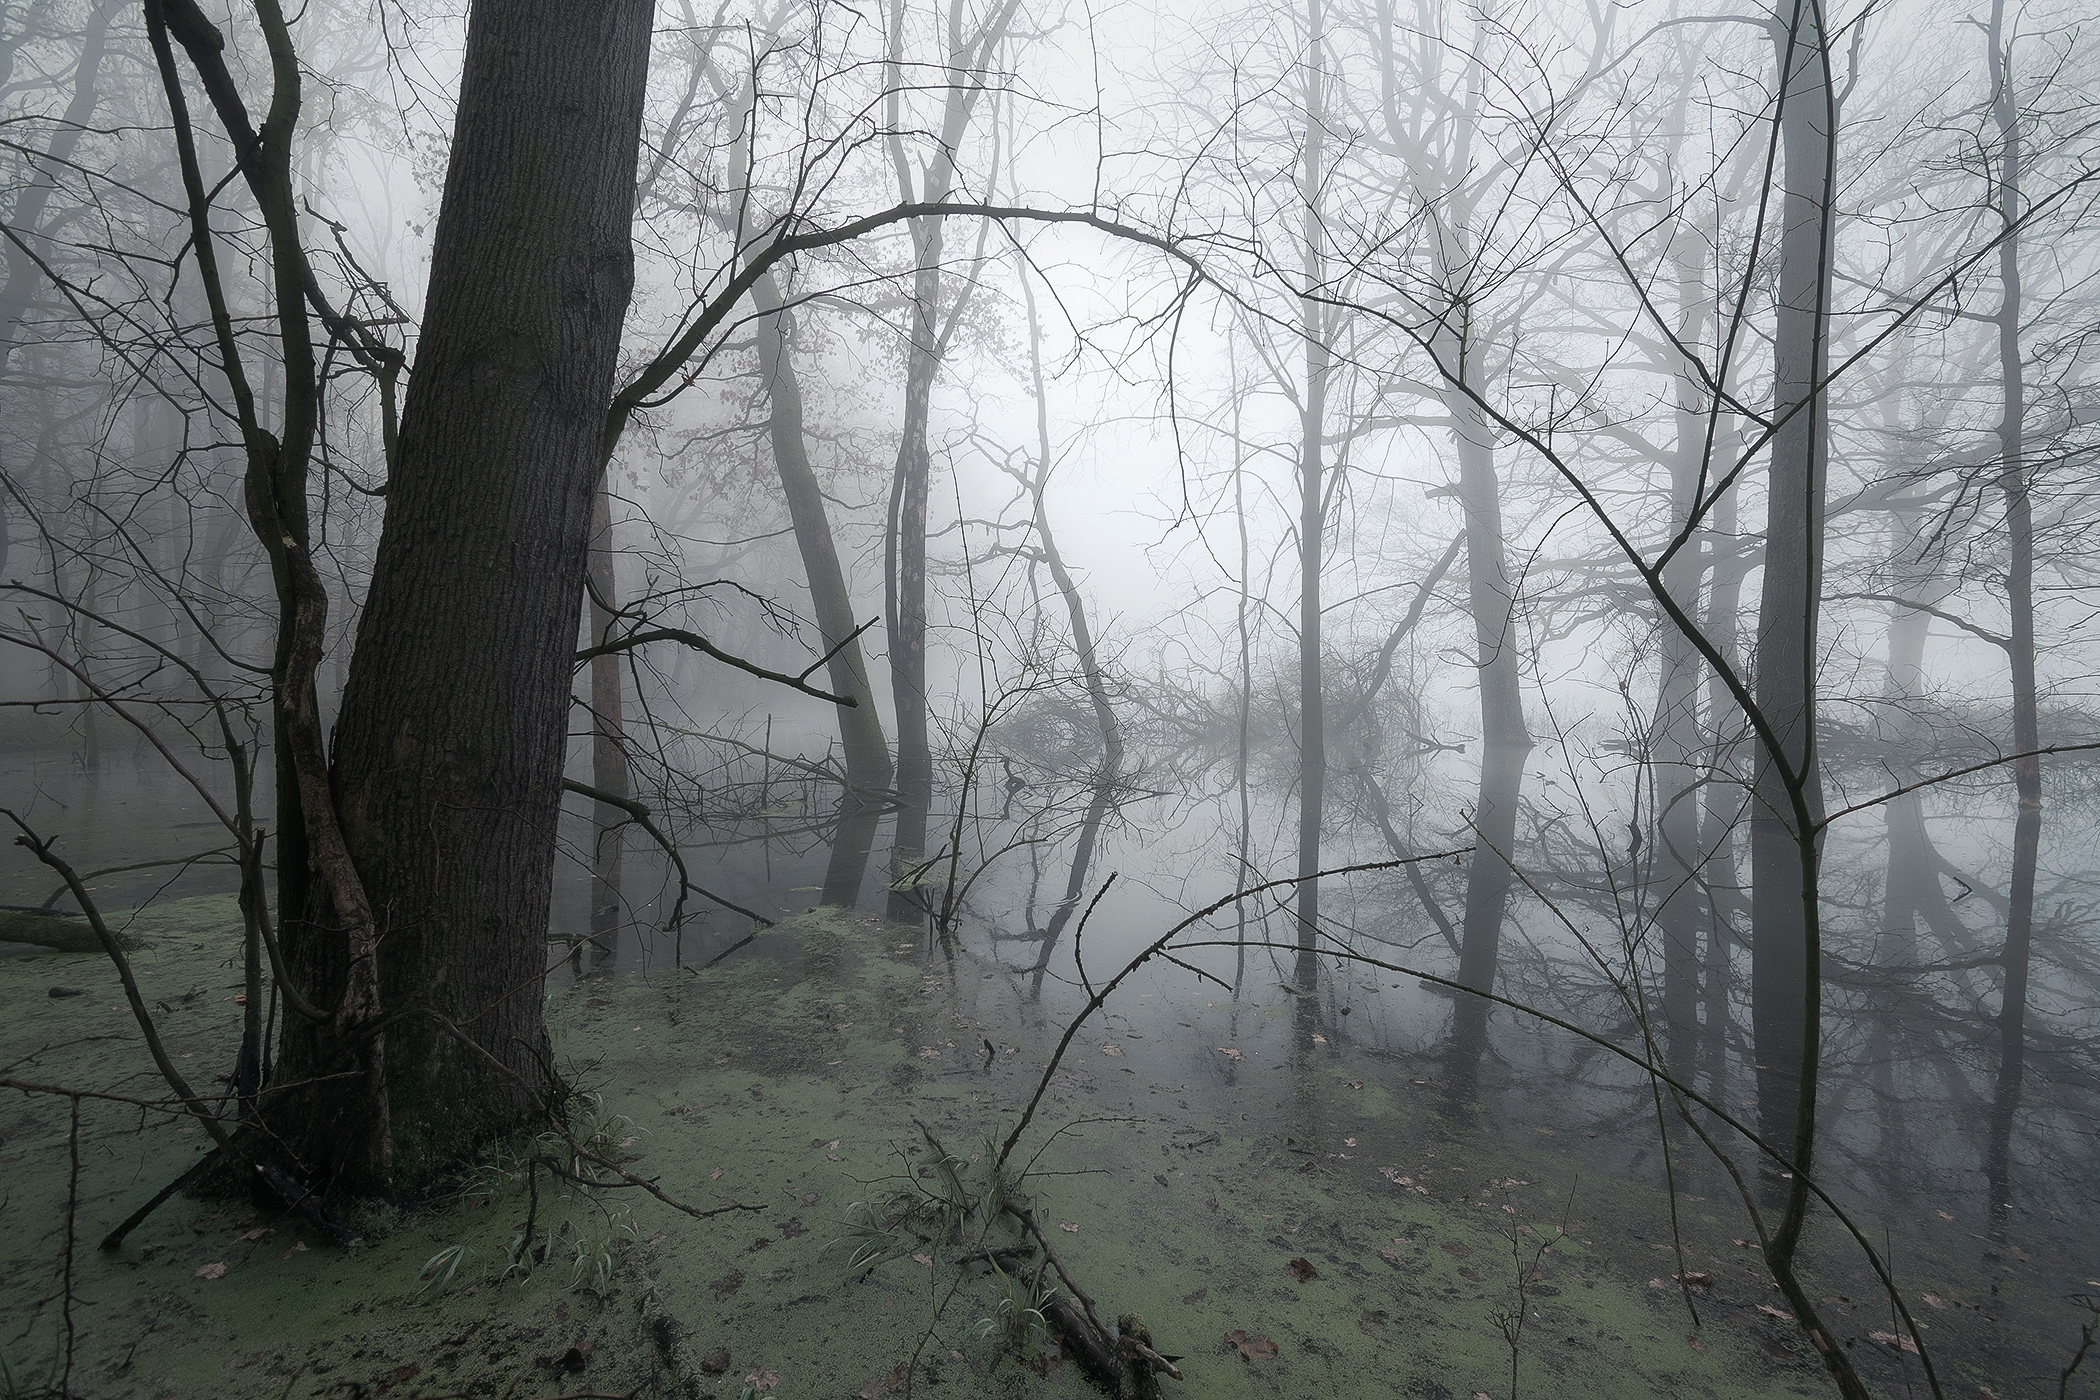 Swamp in Mist